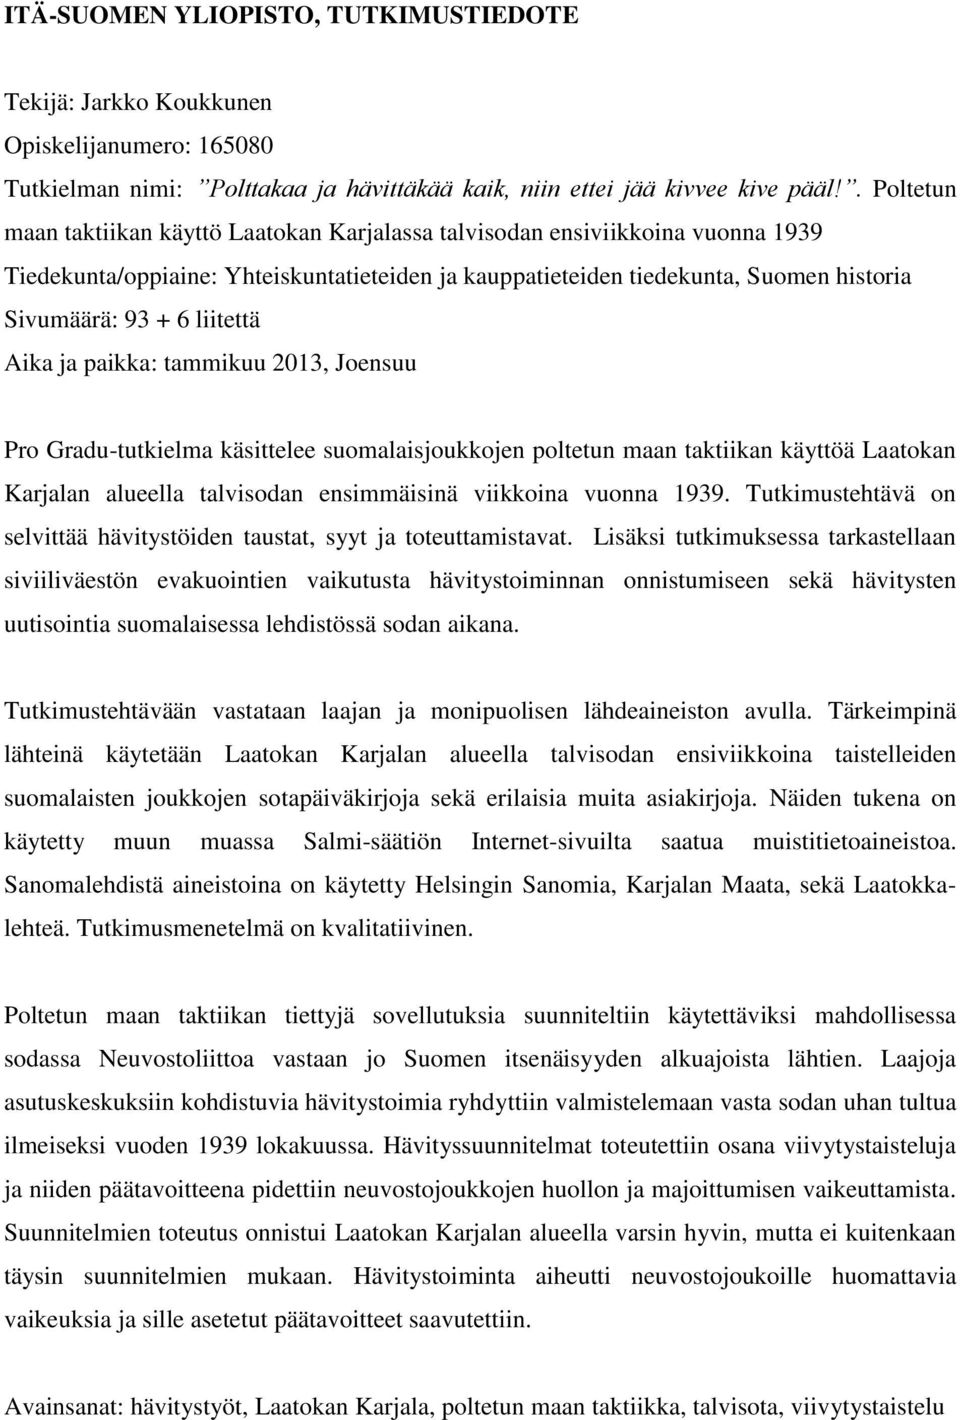 liitettä Aika ja paikka: tammikuu 2013, Joensuu Pro Gradu-tutkielma käsittelee suomalaisjoukkojen poltetun maan taktiikan käyttöä Laatokan Karjalan alueella talvisodan ensimmäisinä viikkoina vuonna